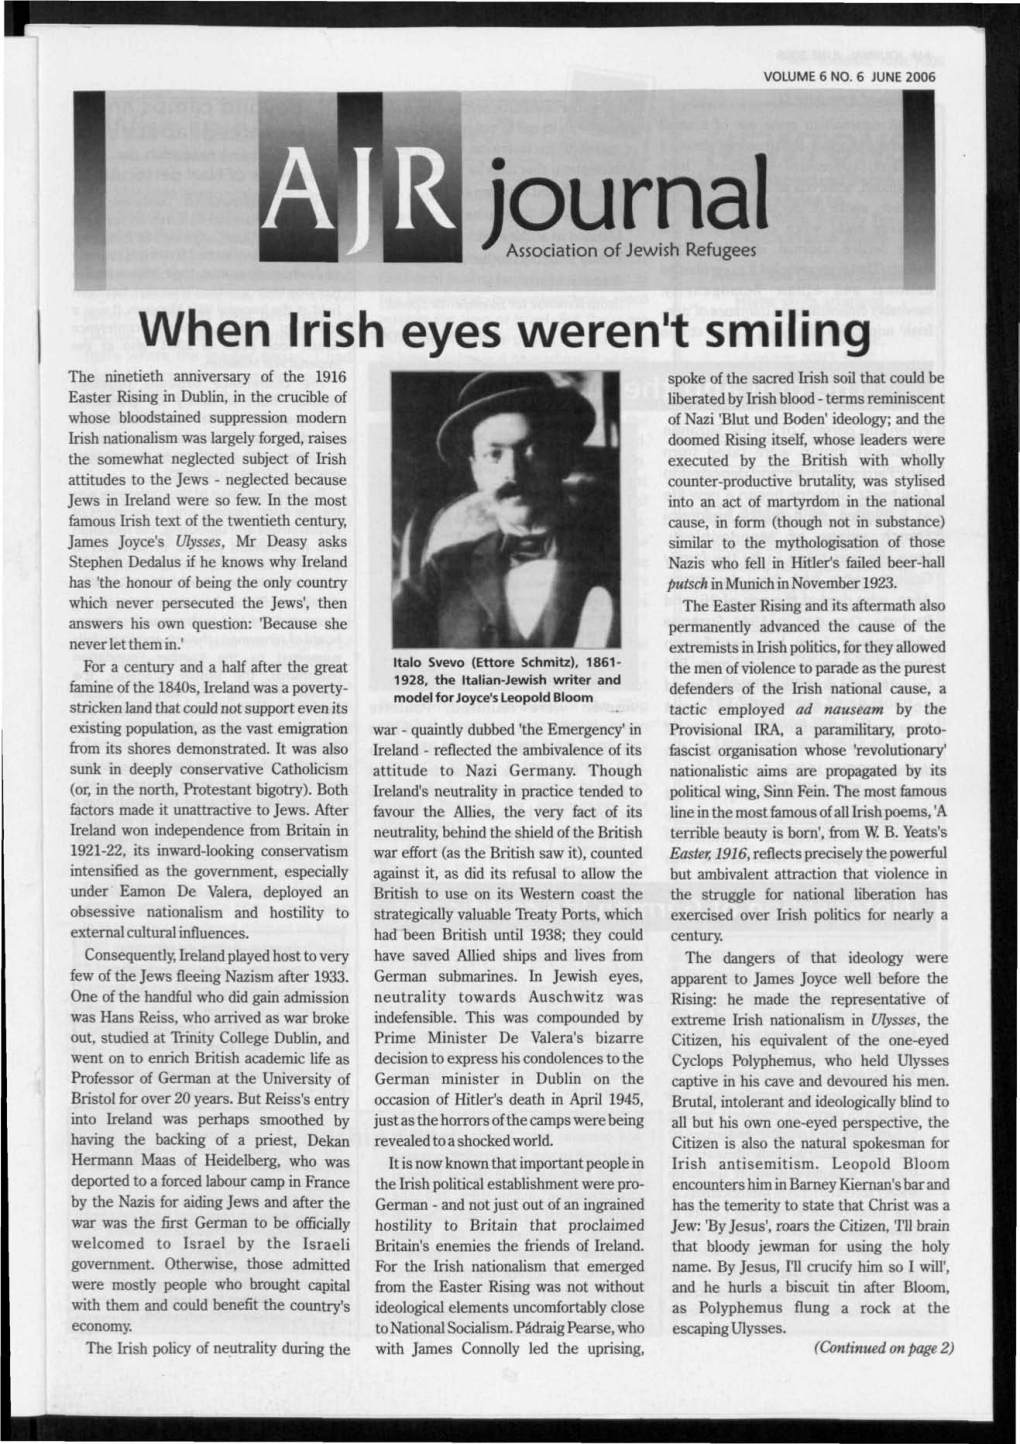 When Irish Eyes Weren't Smiling